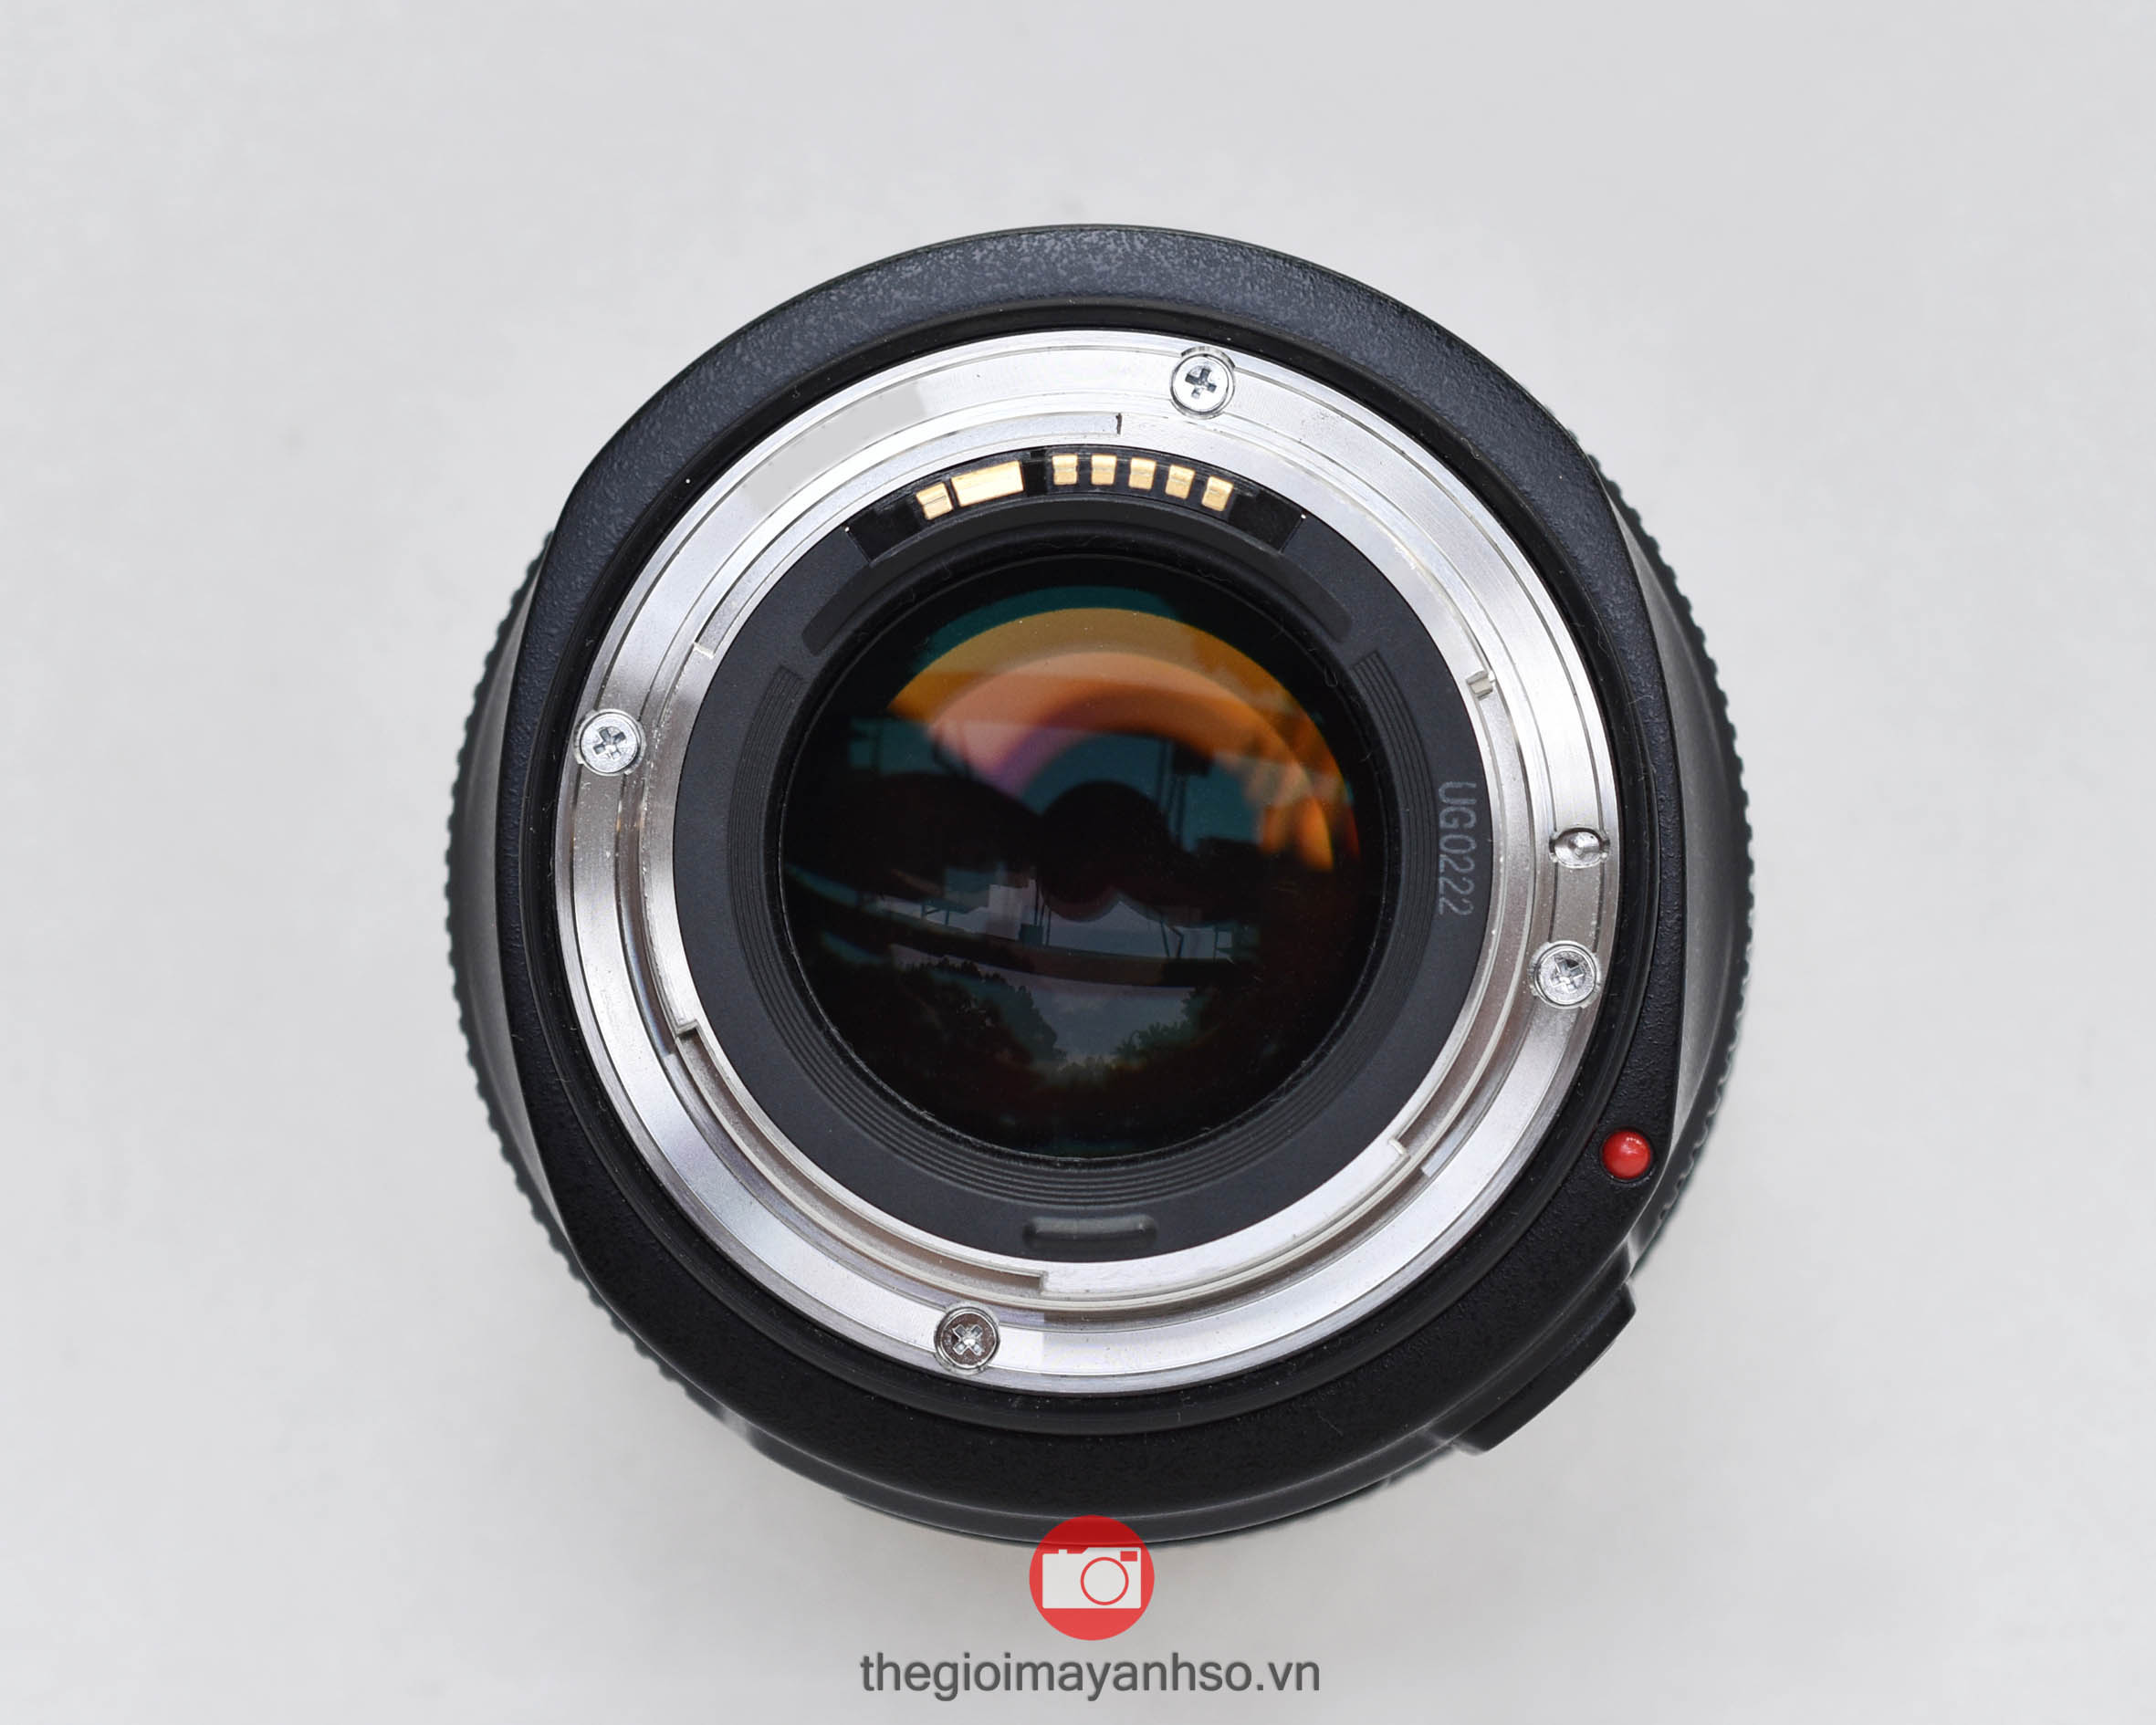  Ống kính Canon EF 50mm f/1.2L USM